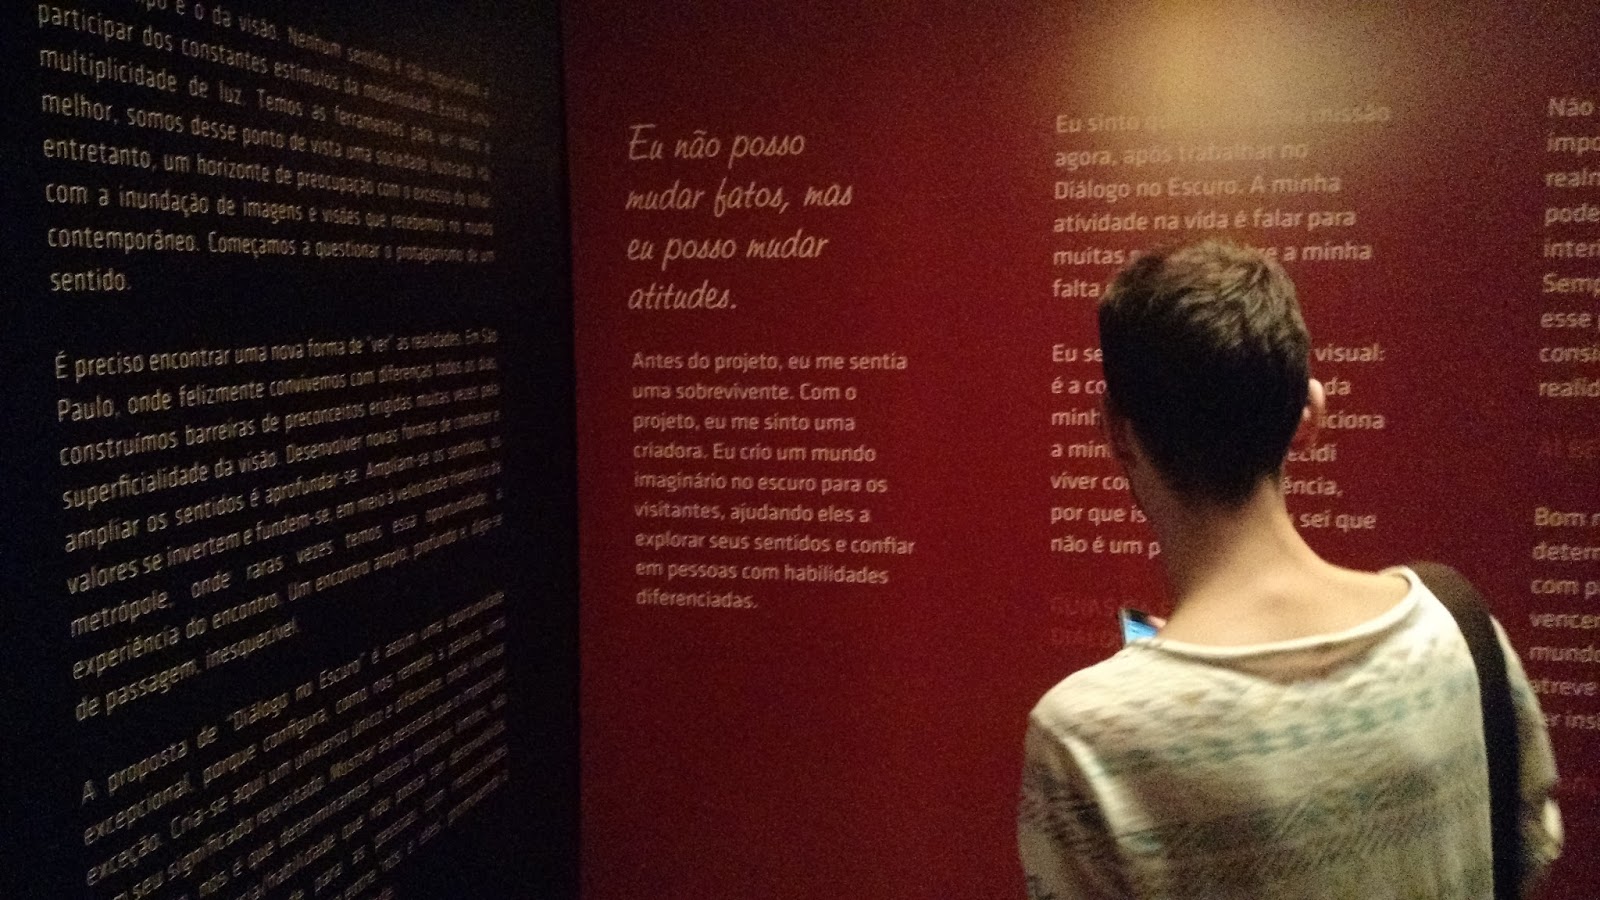 Visitante em São Paulo lendo a parede com frases da Exposição. Entre elas, "Eu não posso mudar fatos, mas eu posso mudar atitudes."